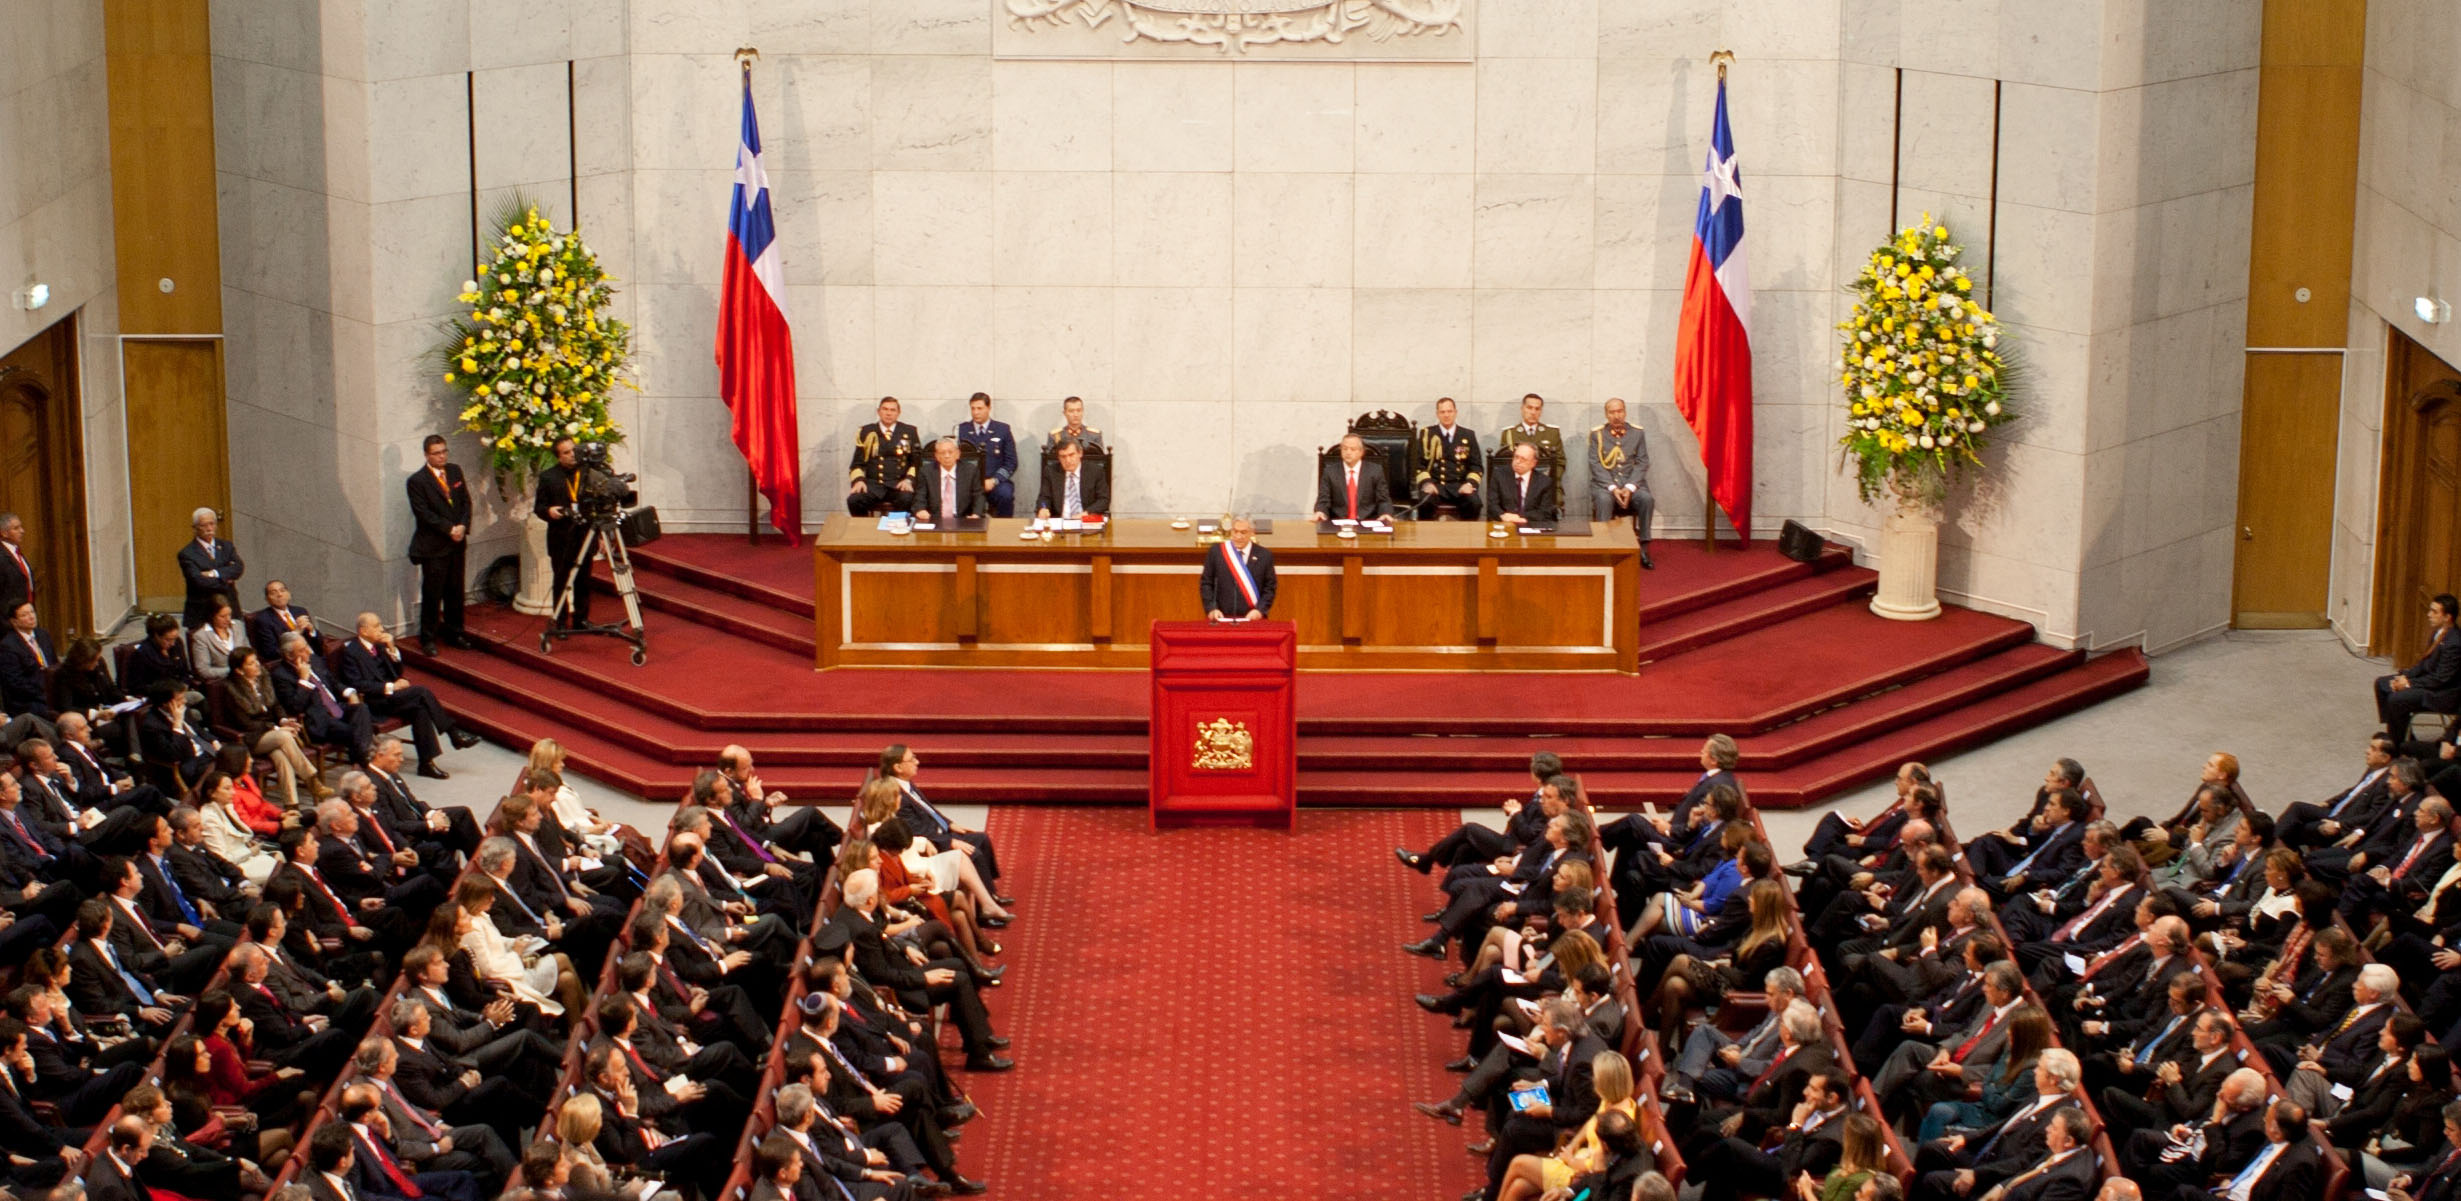 Cuenta pública de Sebastián Piñera en el Congreso Nacional